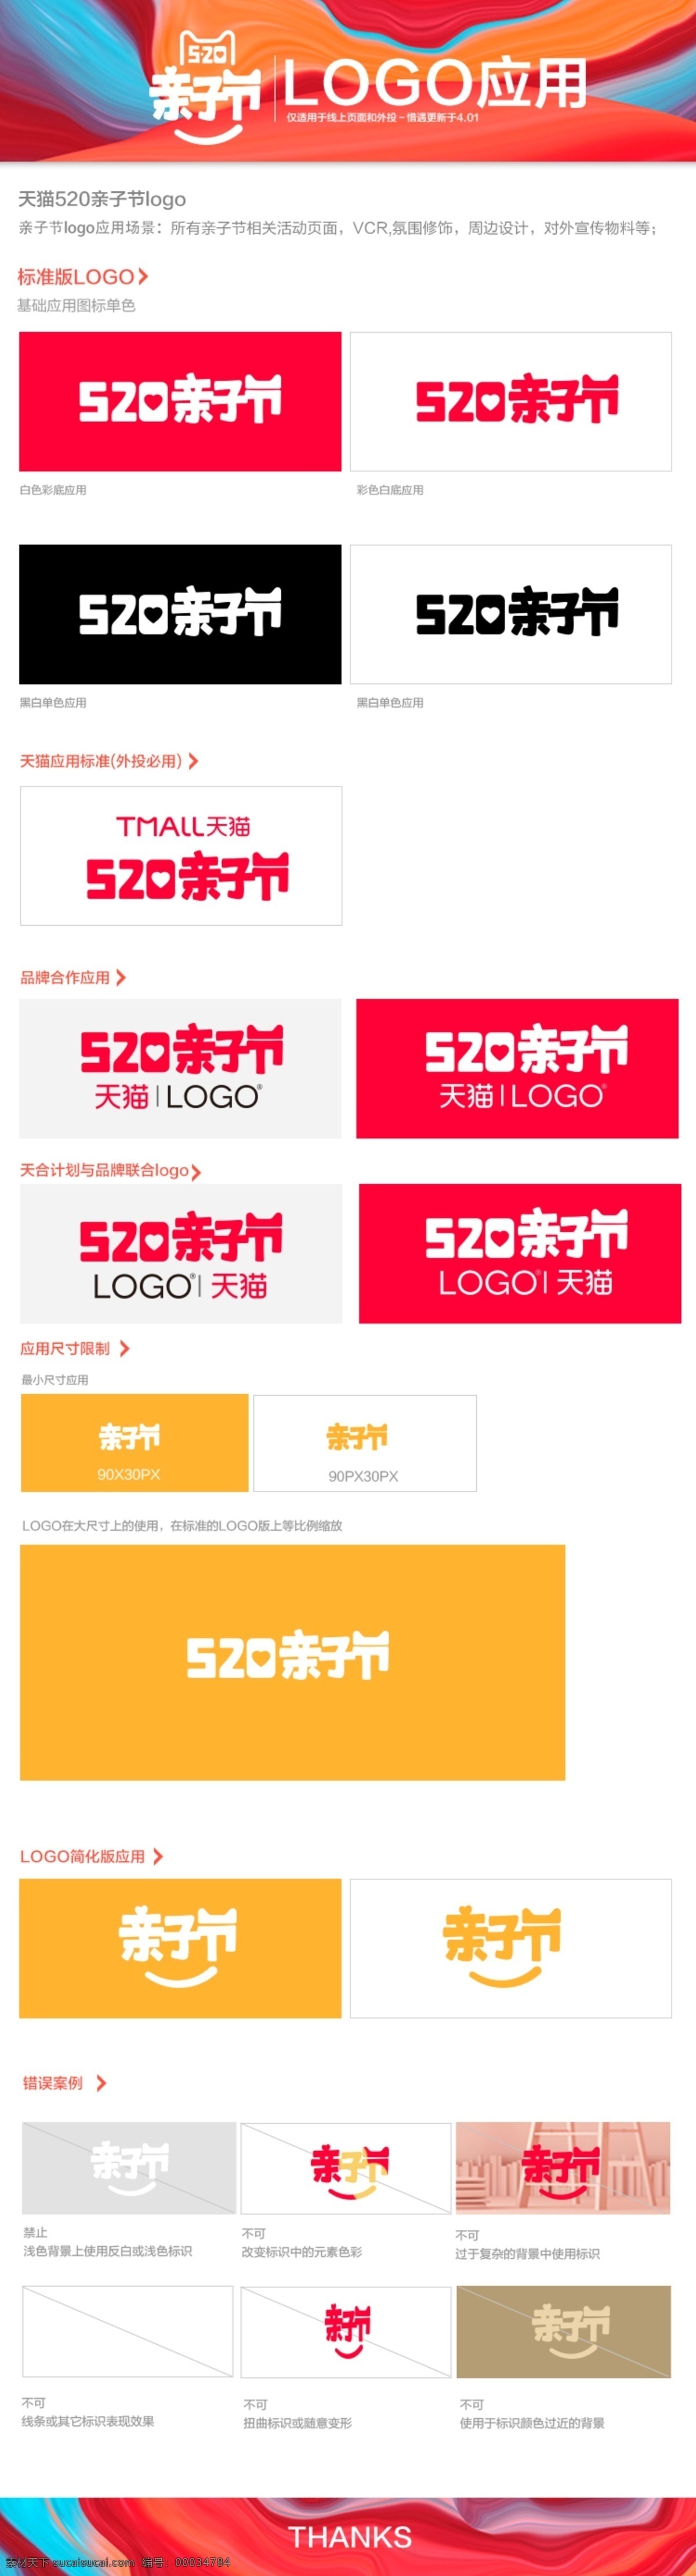 2017 天猫 520 亲子 节 活动 官方 logo 2017天猫 520亲子节